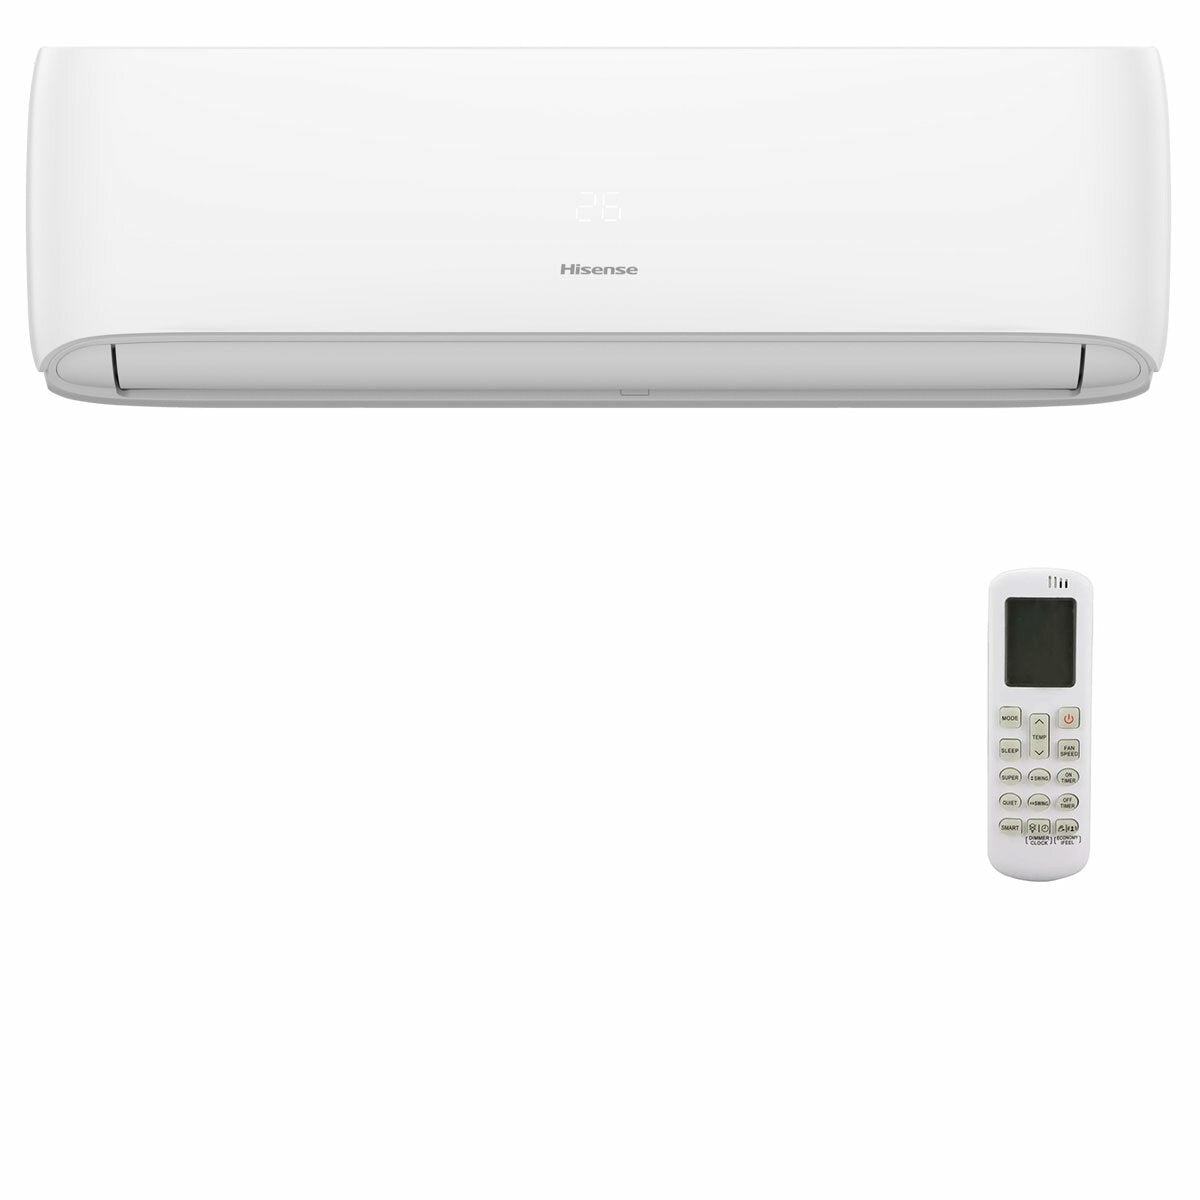 Hisense Hi-Comfort quadri split air conditioner 7000+7000+7000+18000 BTU inverter A++ wifi outdoor unit 8 kW